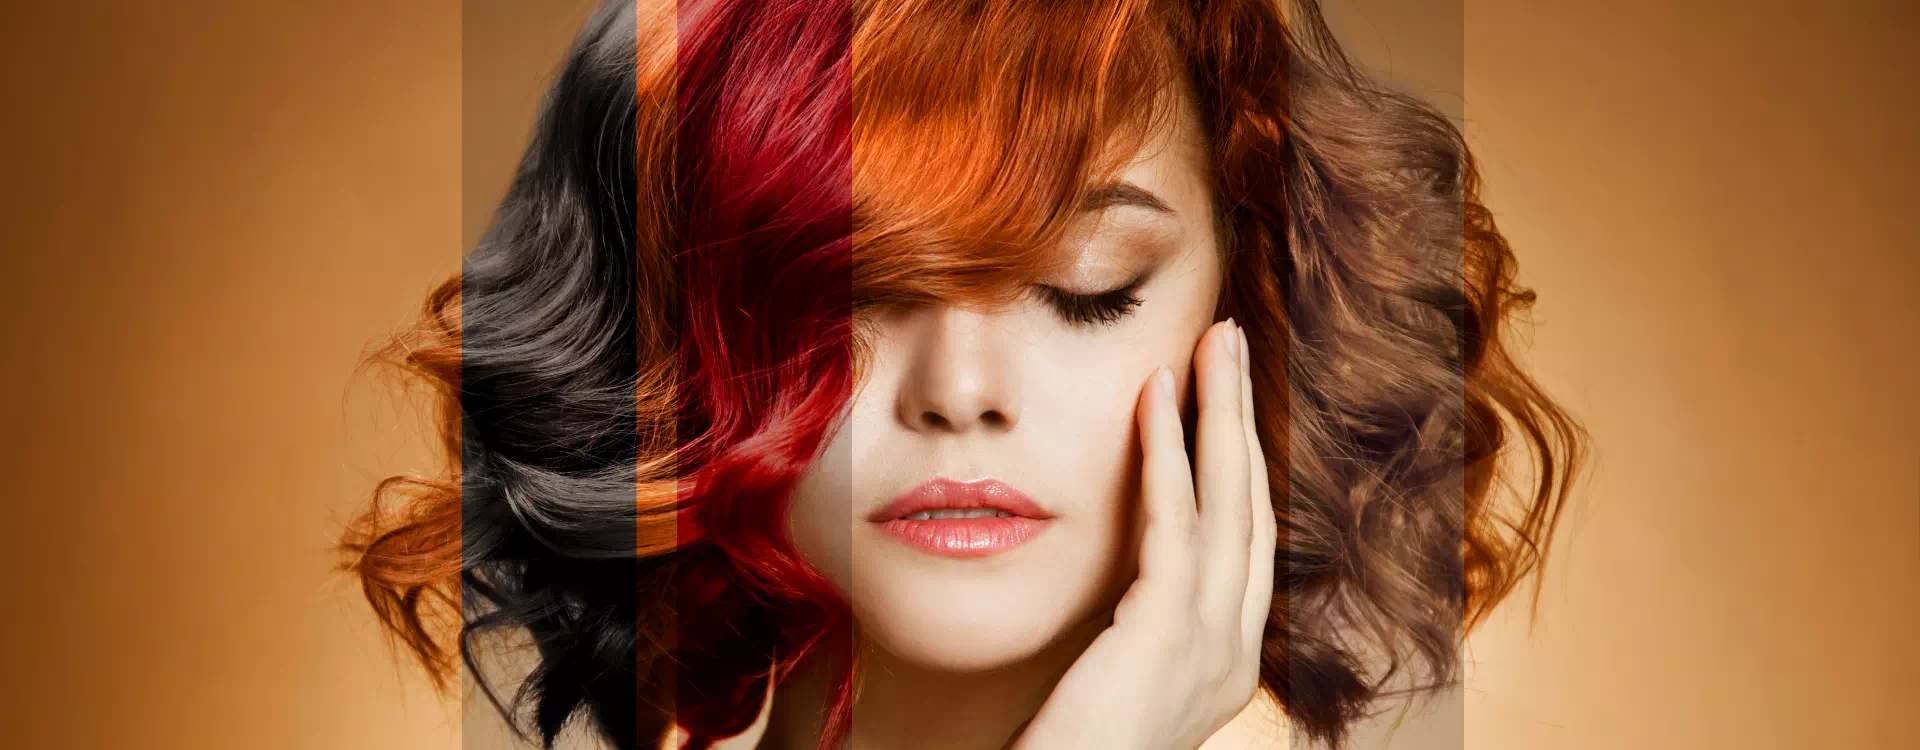 farbowane włosy na rudo